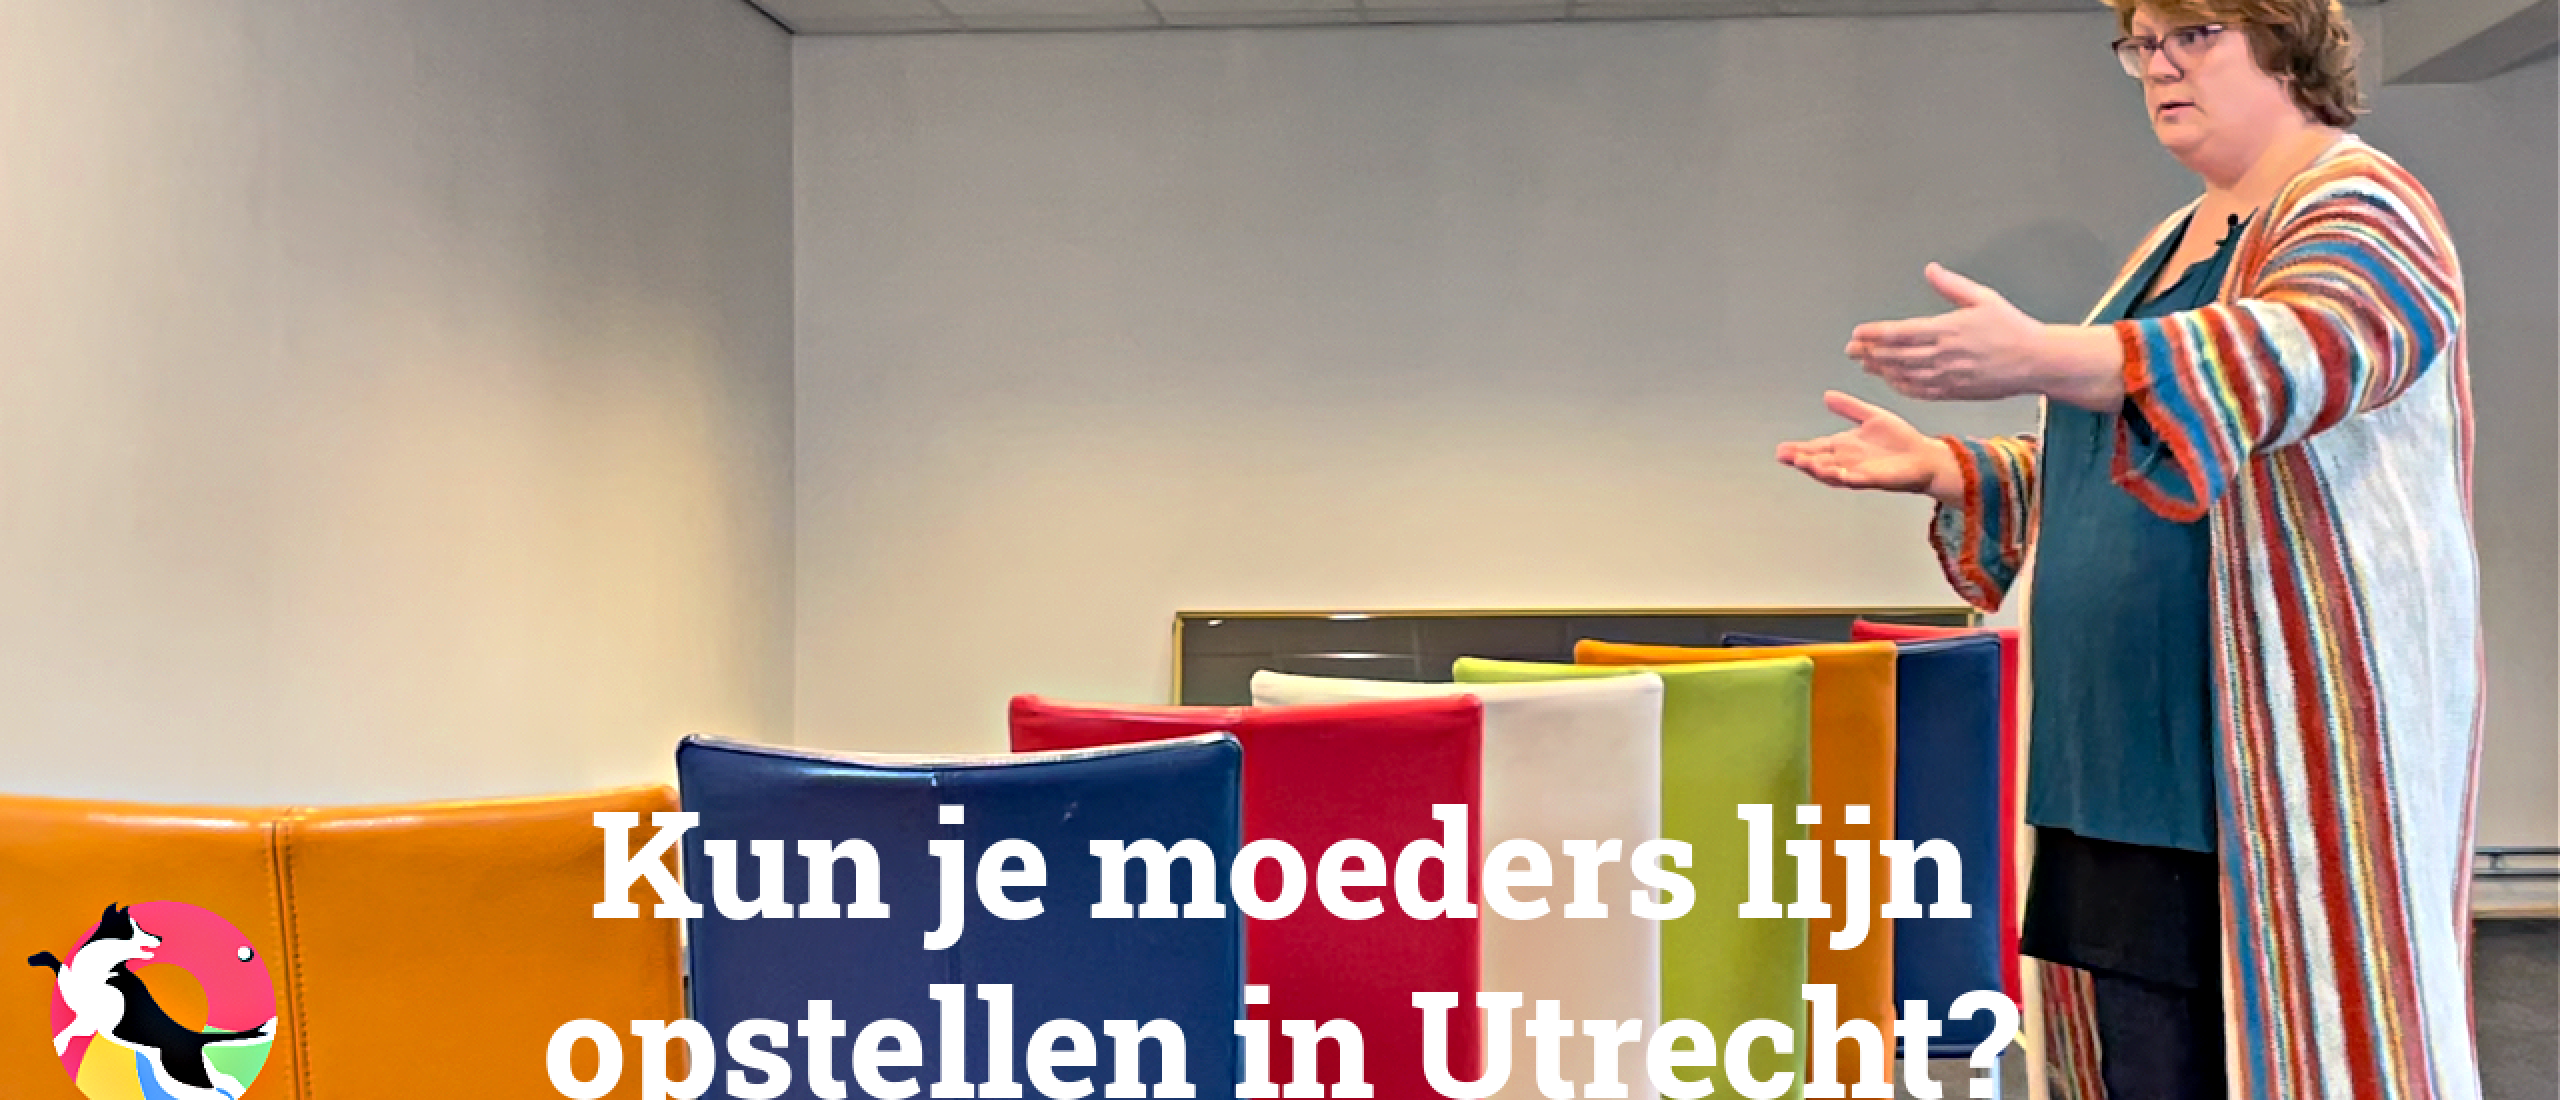 Kun je moeders 👩‍👧 lijn opstellen in Utrecht?